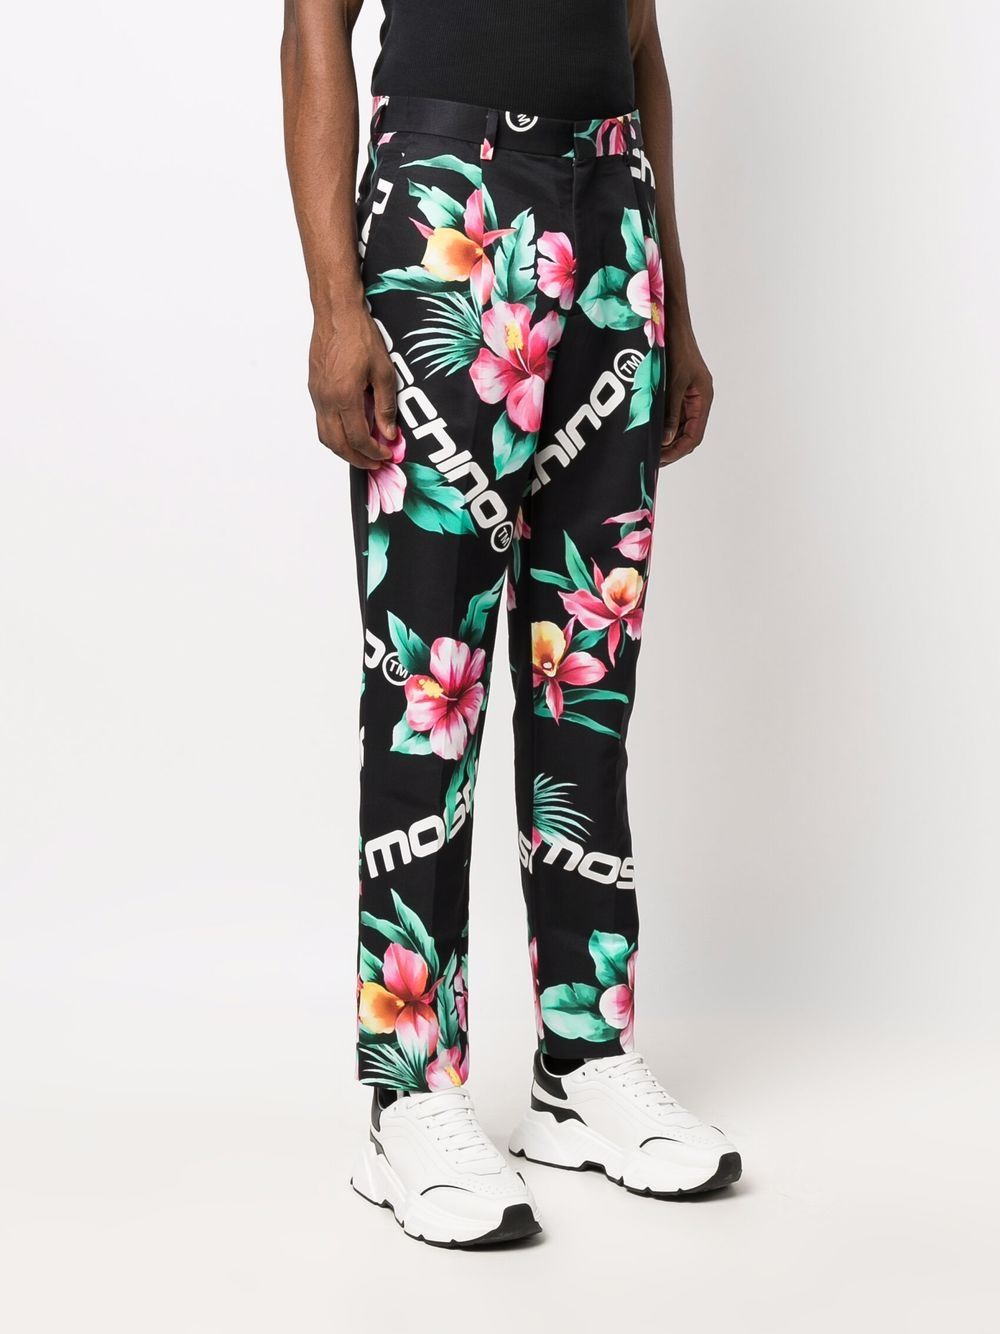 фото Moschino спортивные брюки с цветочным принтом